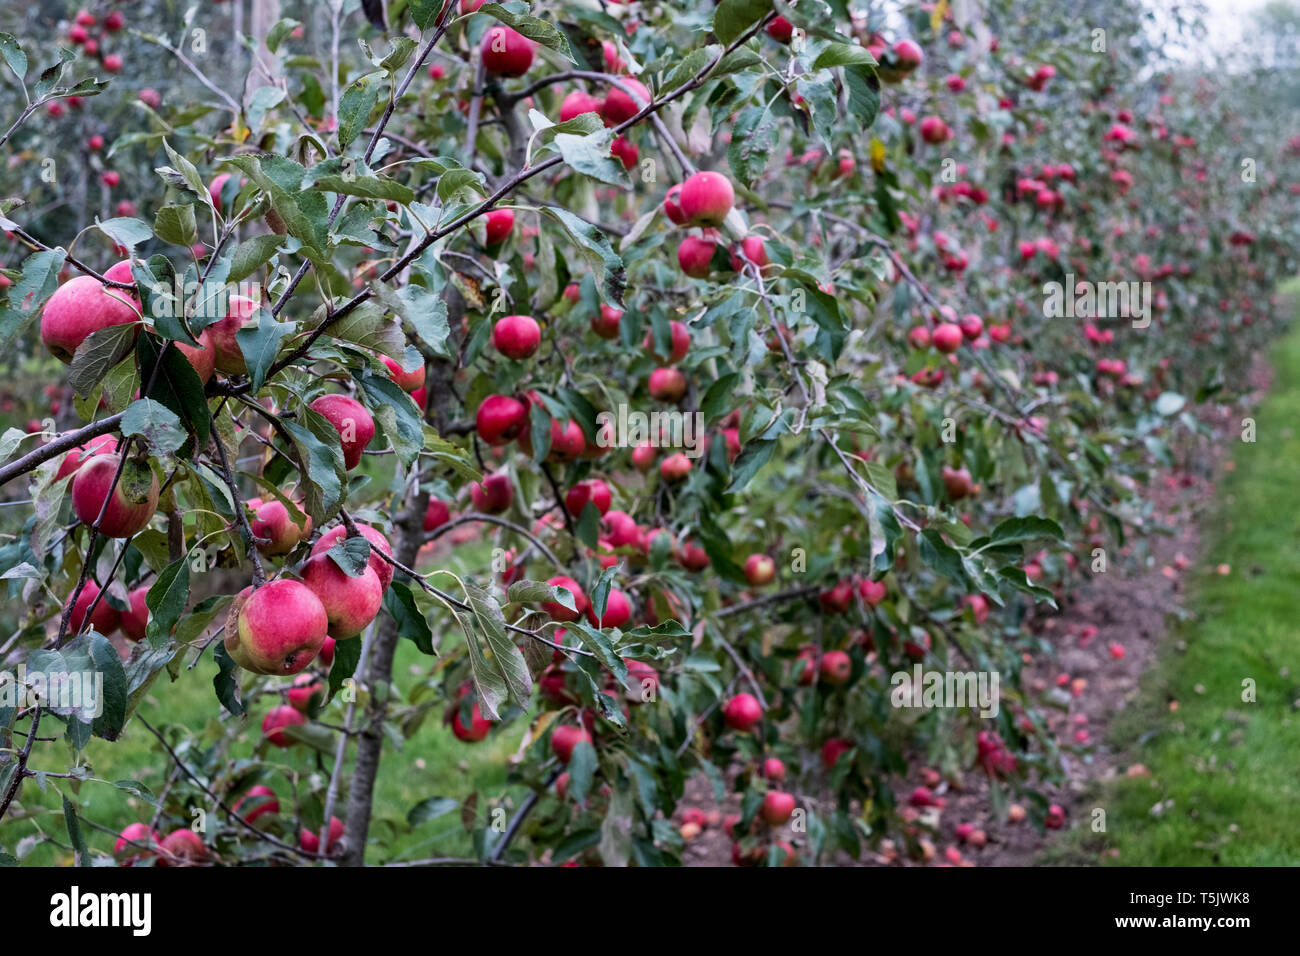 Apfelbäume in einem organischen Orchard Garten im Herbst, rote Früchte reif für die Ernte auf den Ästen von espaliered Obstbäume. Stockfoto